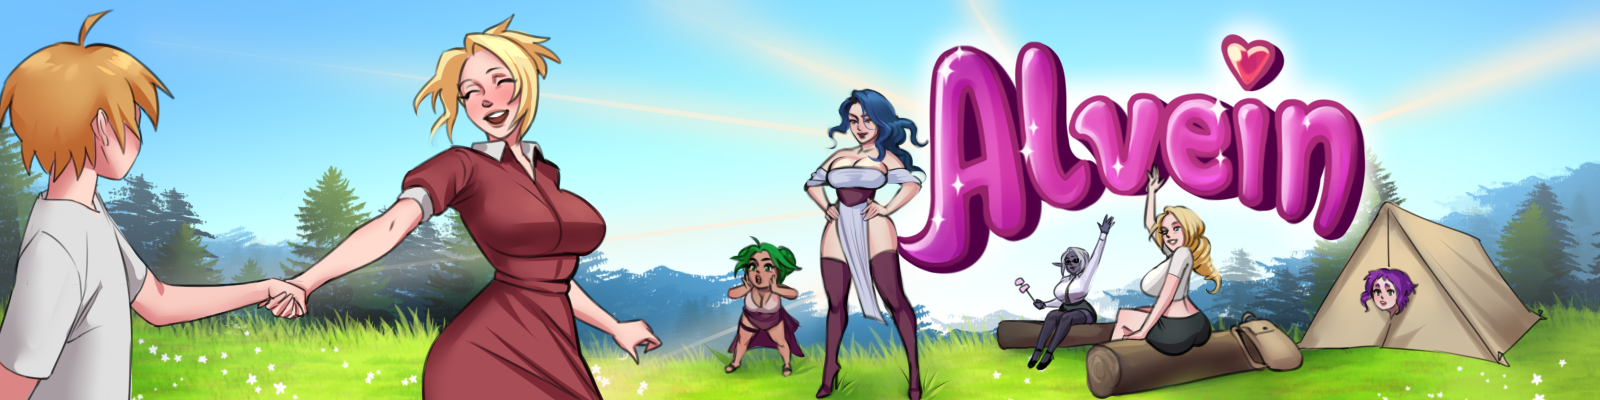 Alvein game banner